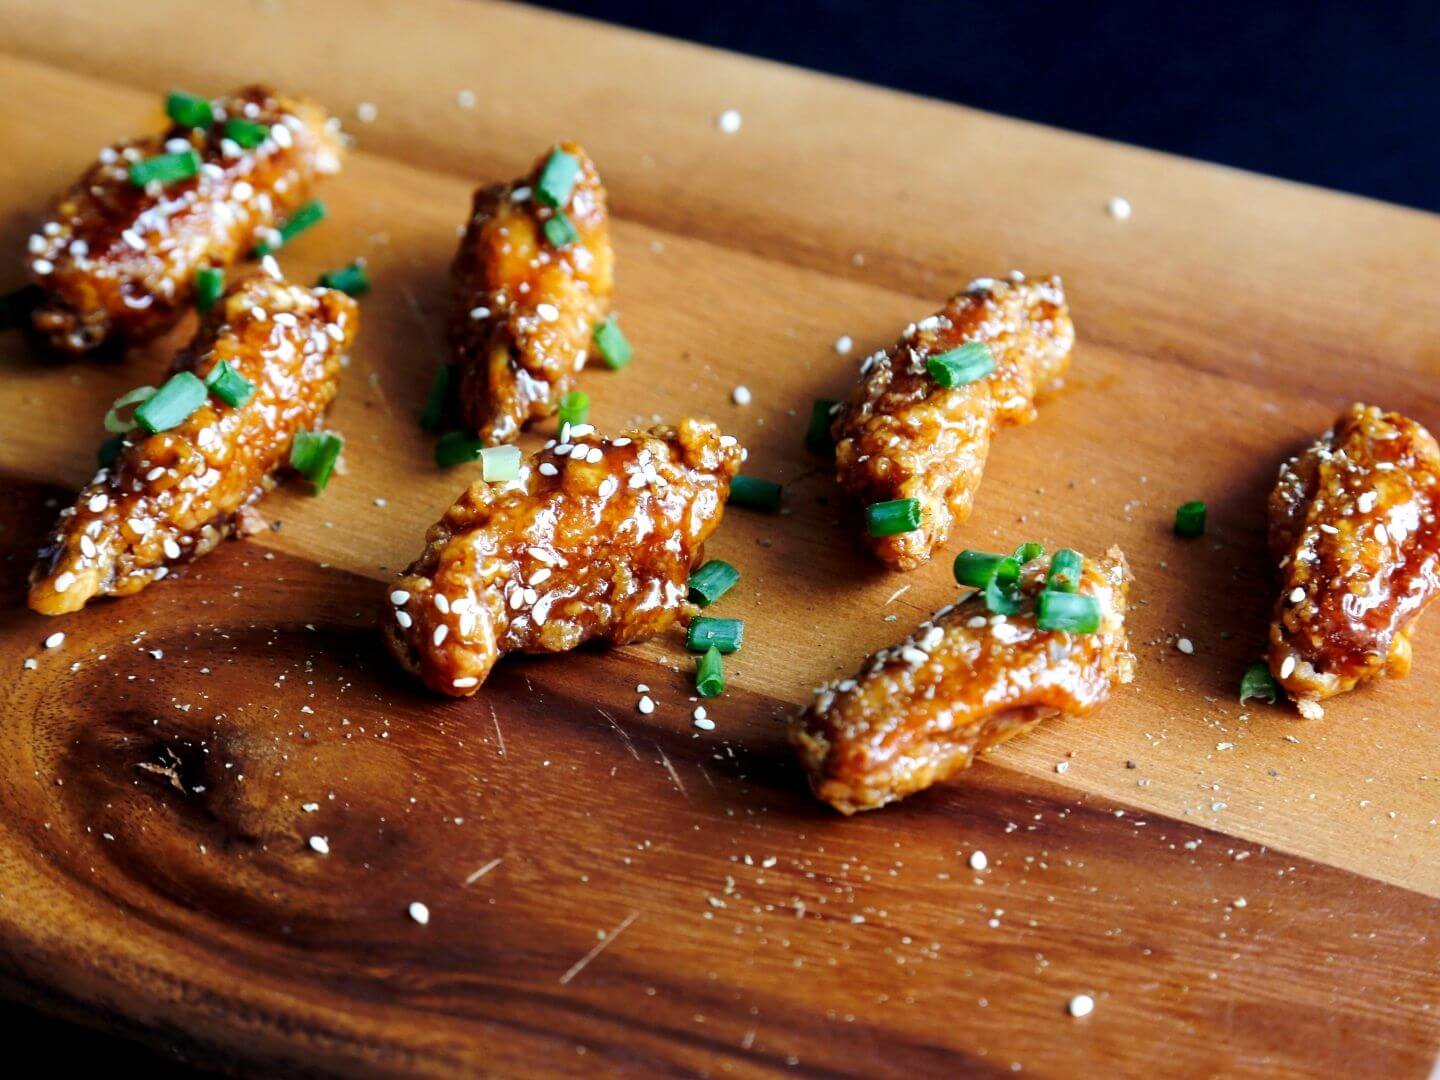 Dakgangjeong – Soy Garlic Fried Chicken